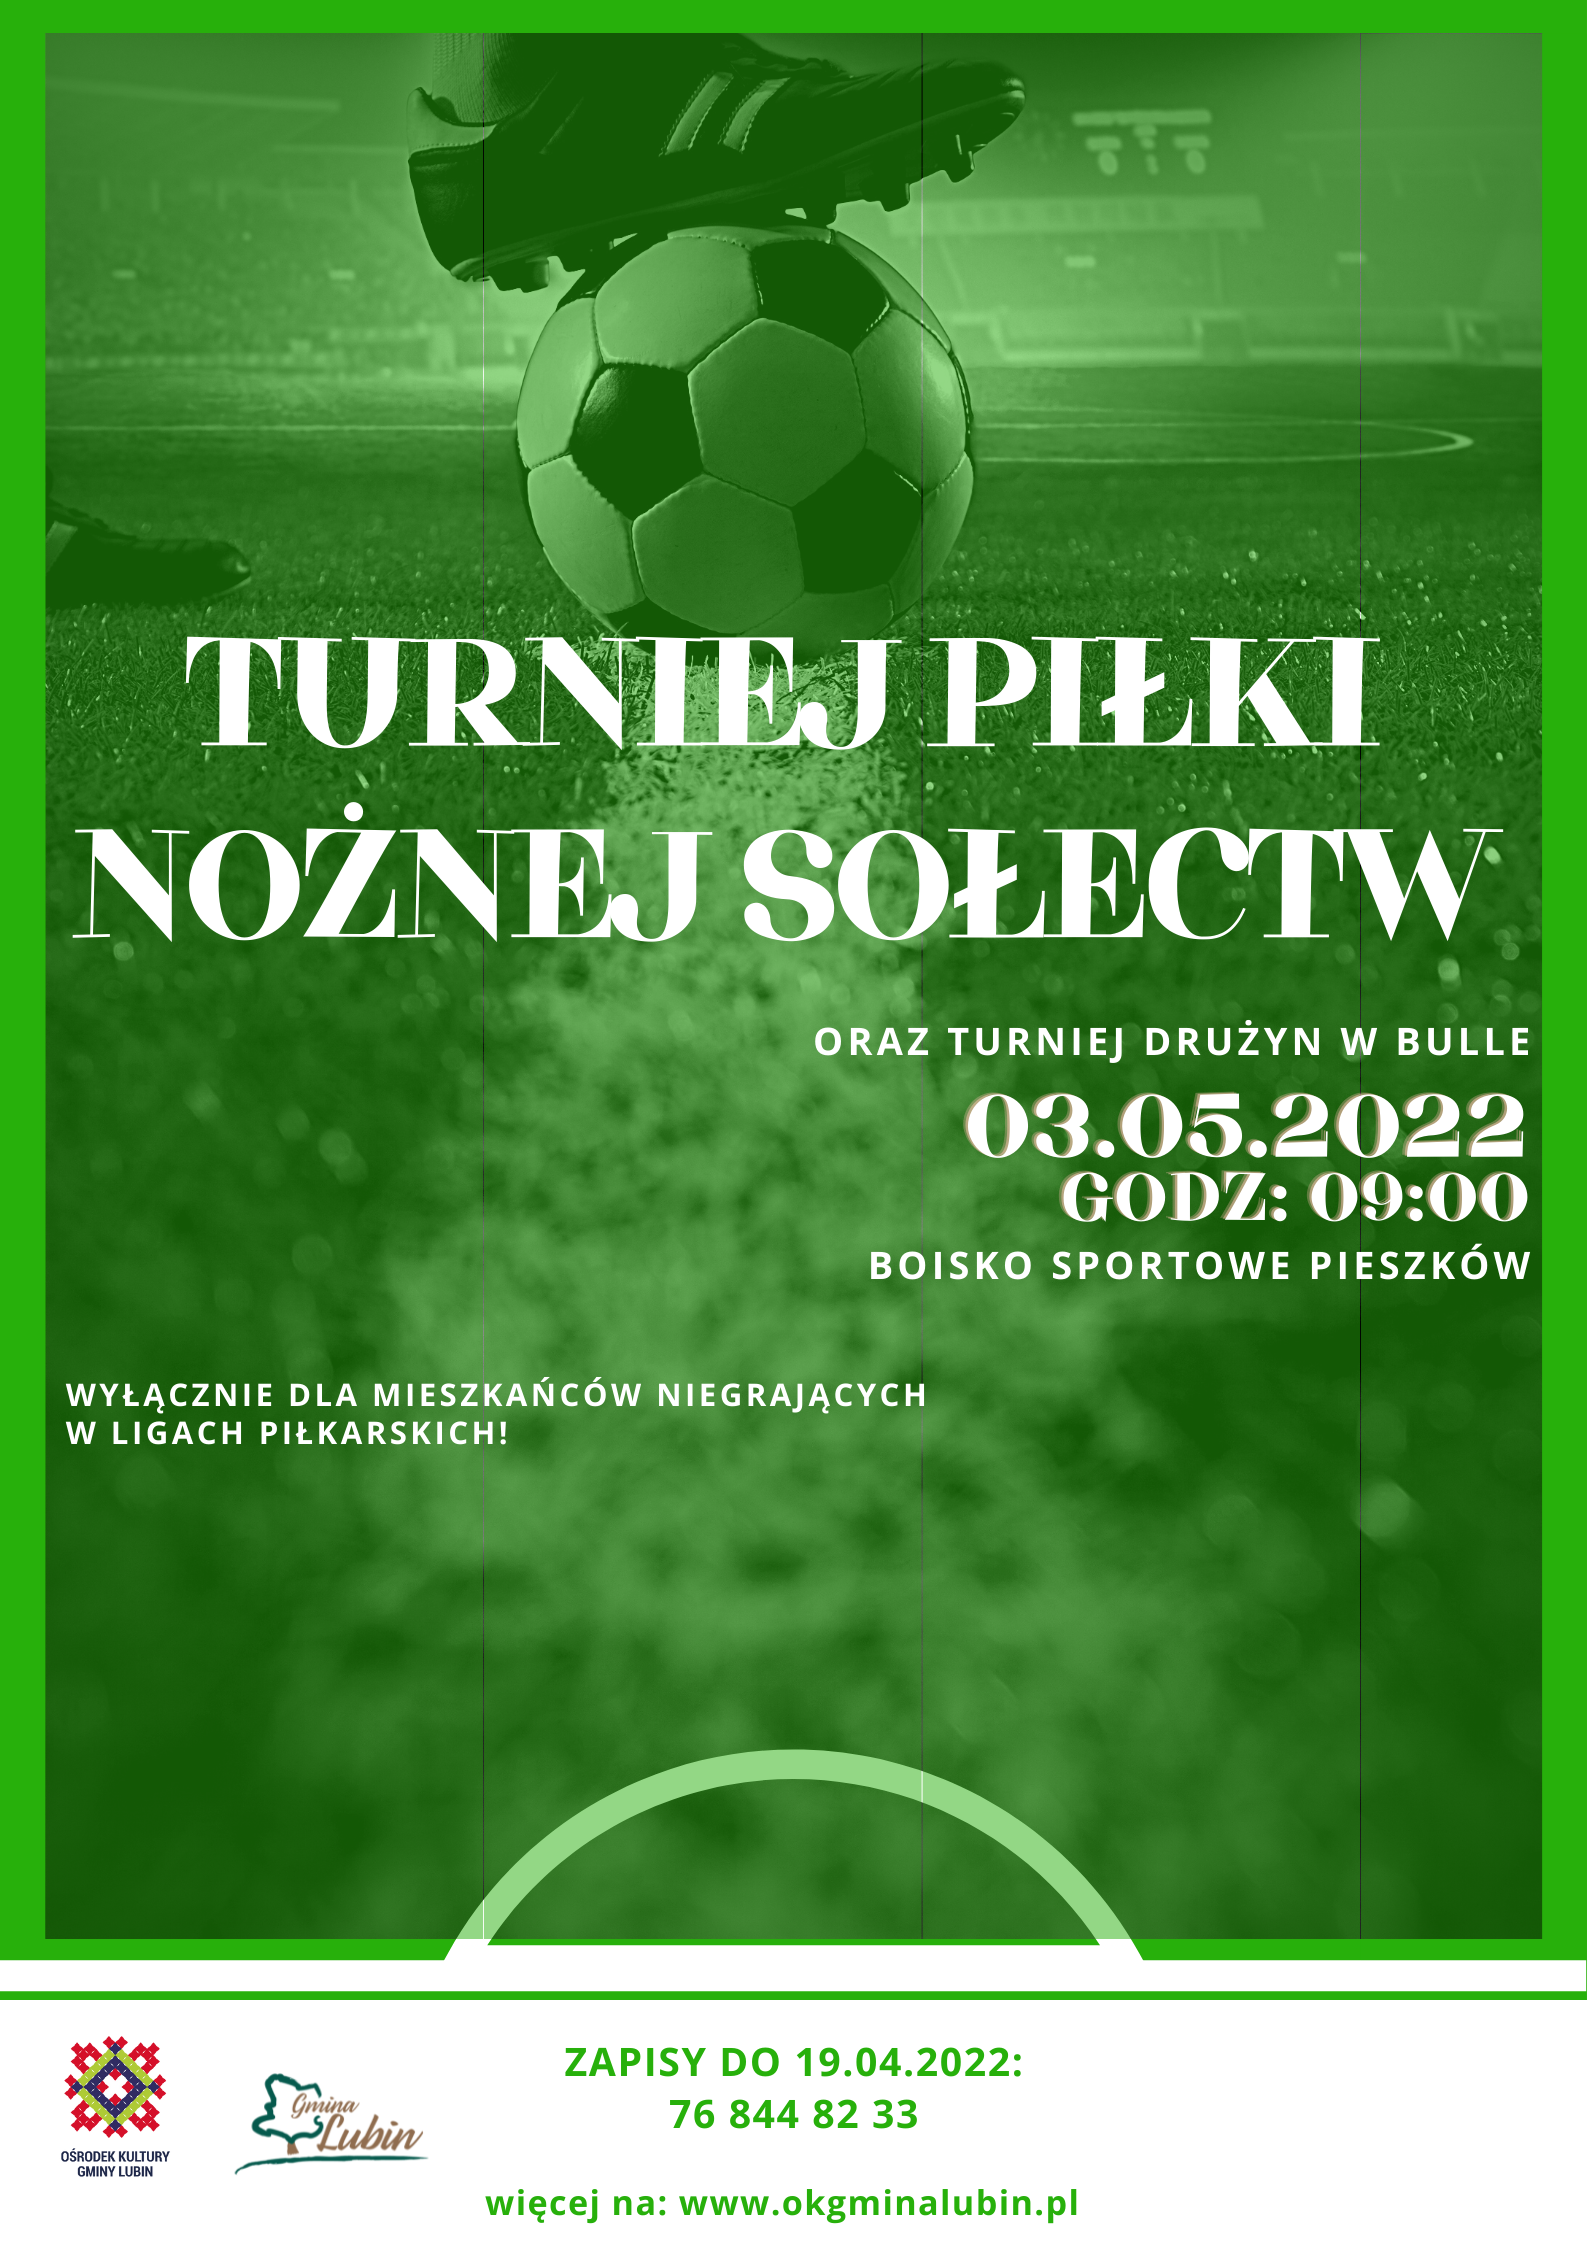 turniej Piłki Nożnej Sołectw Pieszków 03.05.2022 godzina 10:00Piłka Nożna Otwarta Rekrutacja Plakat (2)